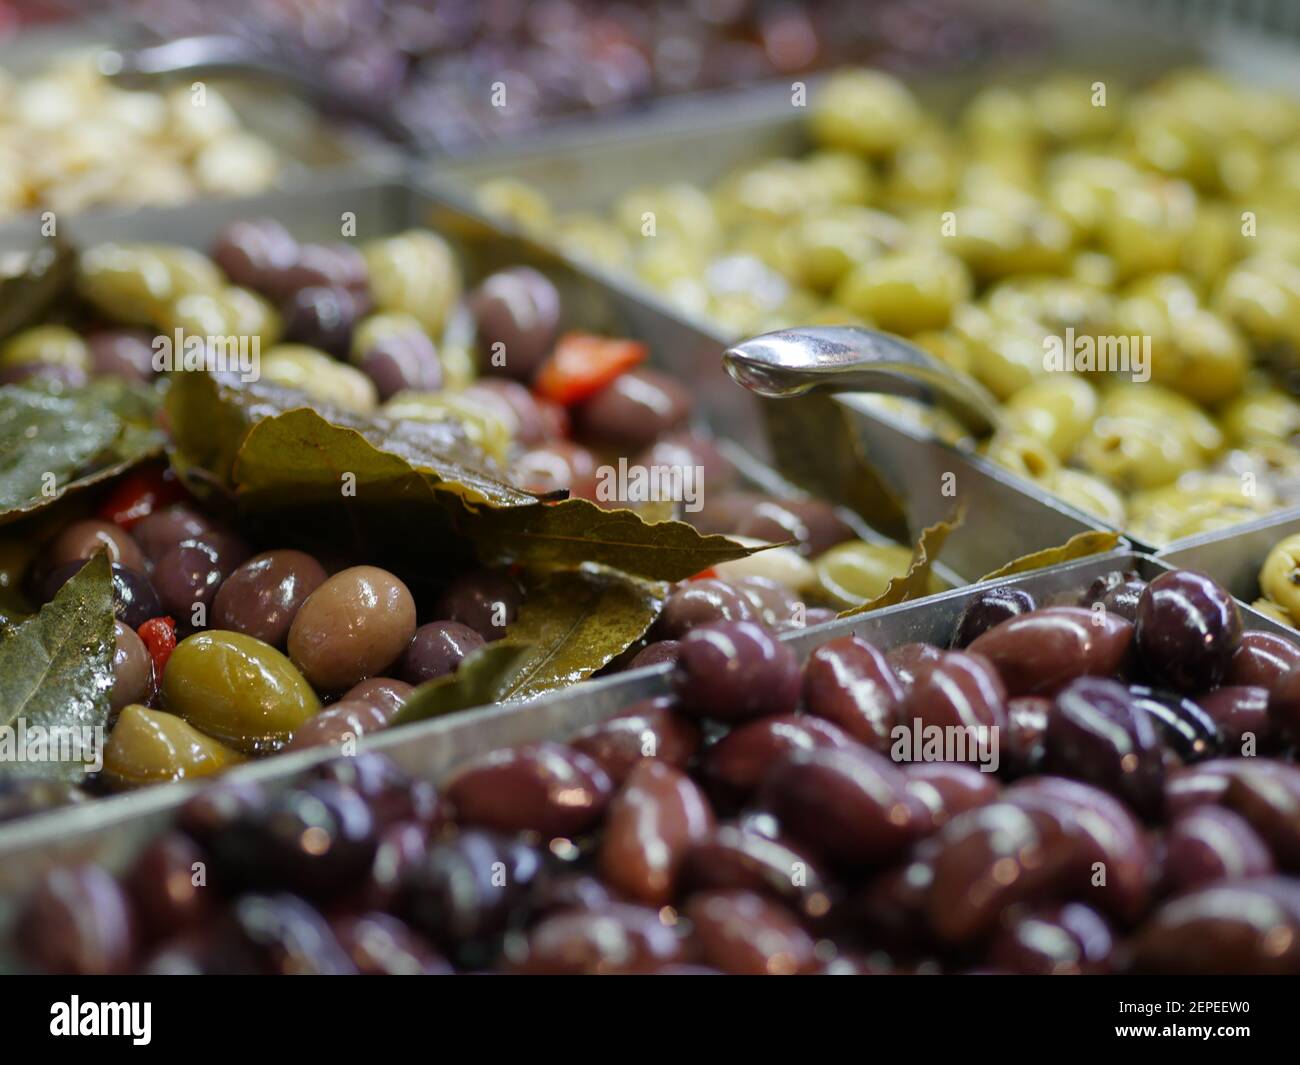 Selezione mista di olive verdi fresche e nere per pollici Delicatessen Sezione di Supermarket nel Regno Unito Foto Stock